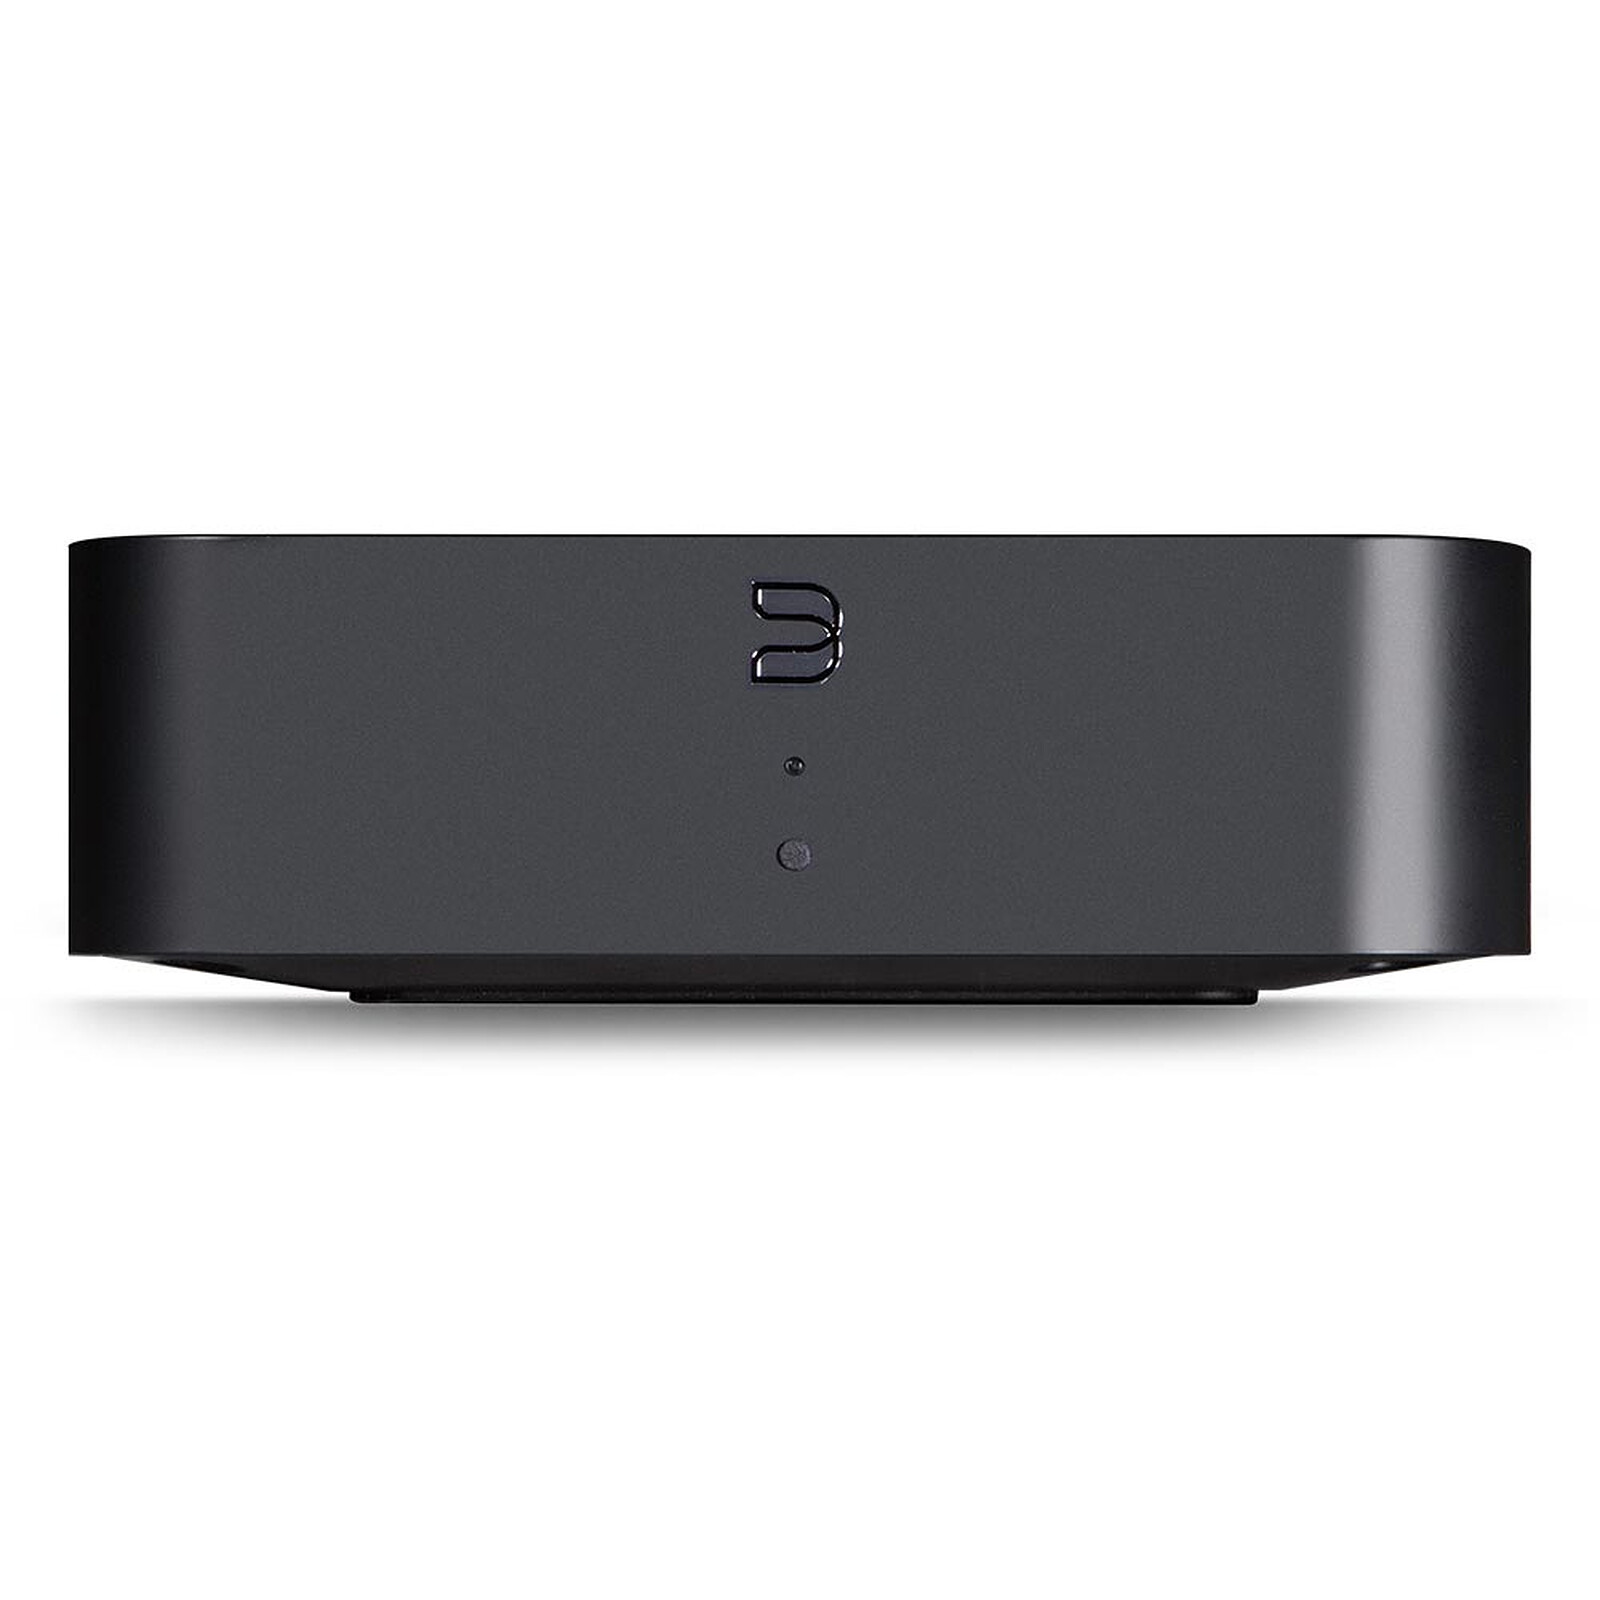 Lindy Transmetteur Bluetooth (Jack/Toslink) - Réseau & Streaming audio -  Garantie 3 ans LDLC